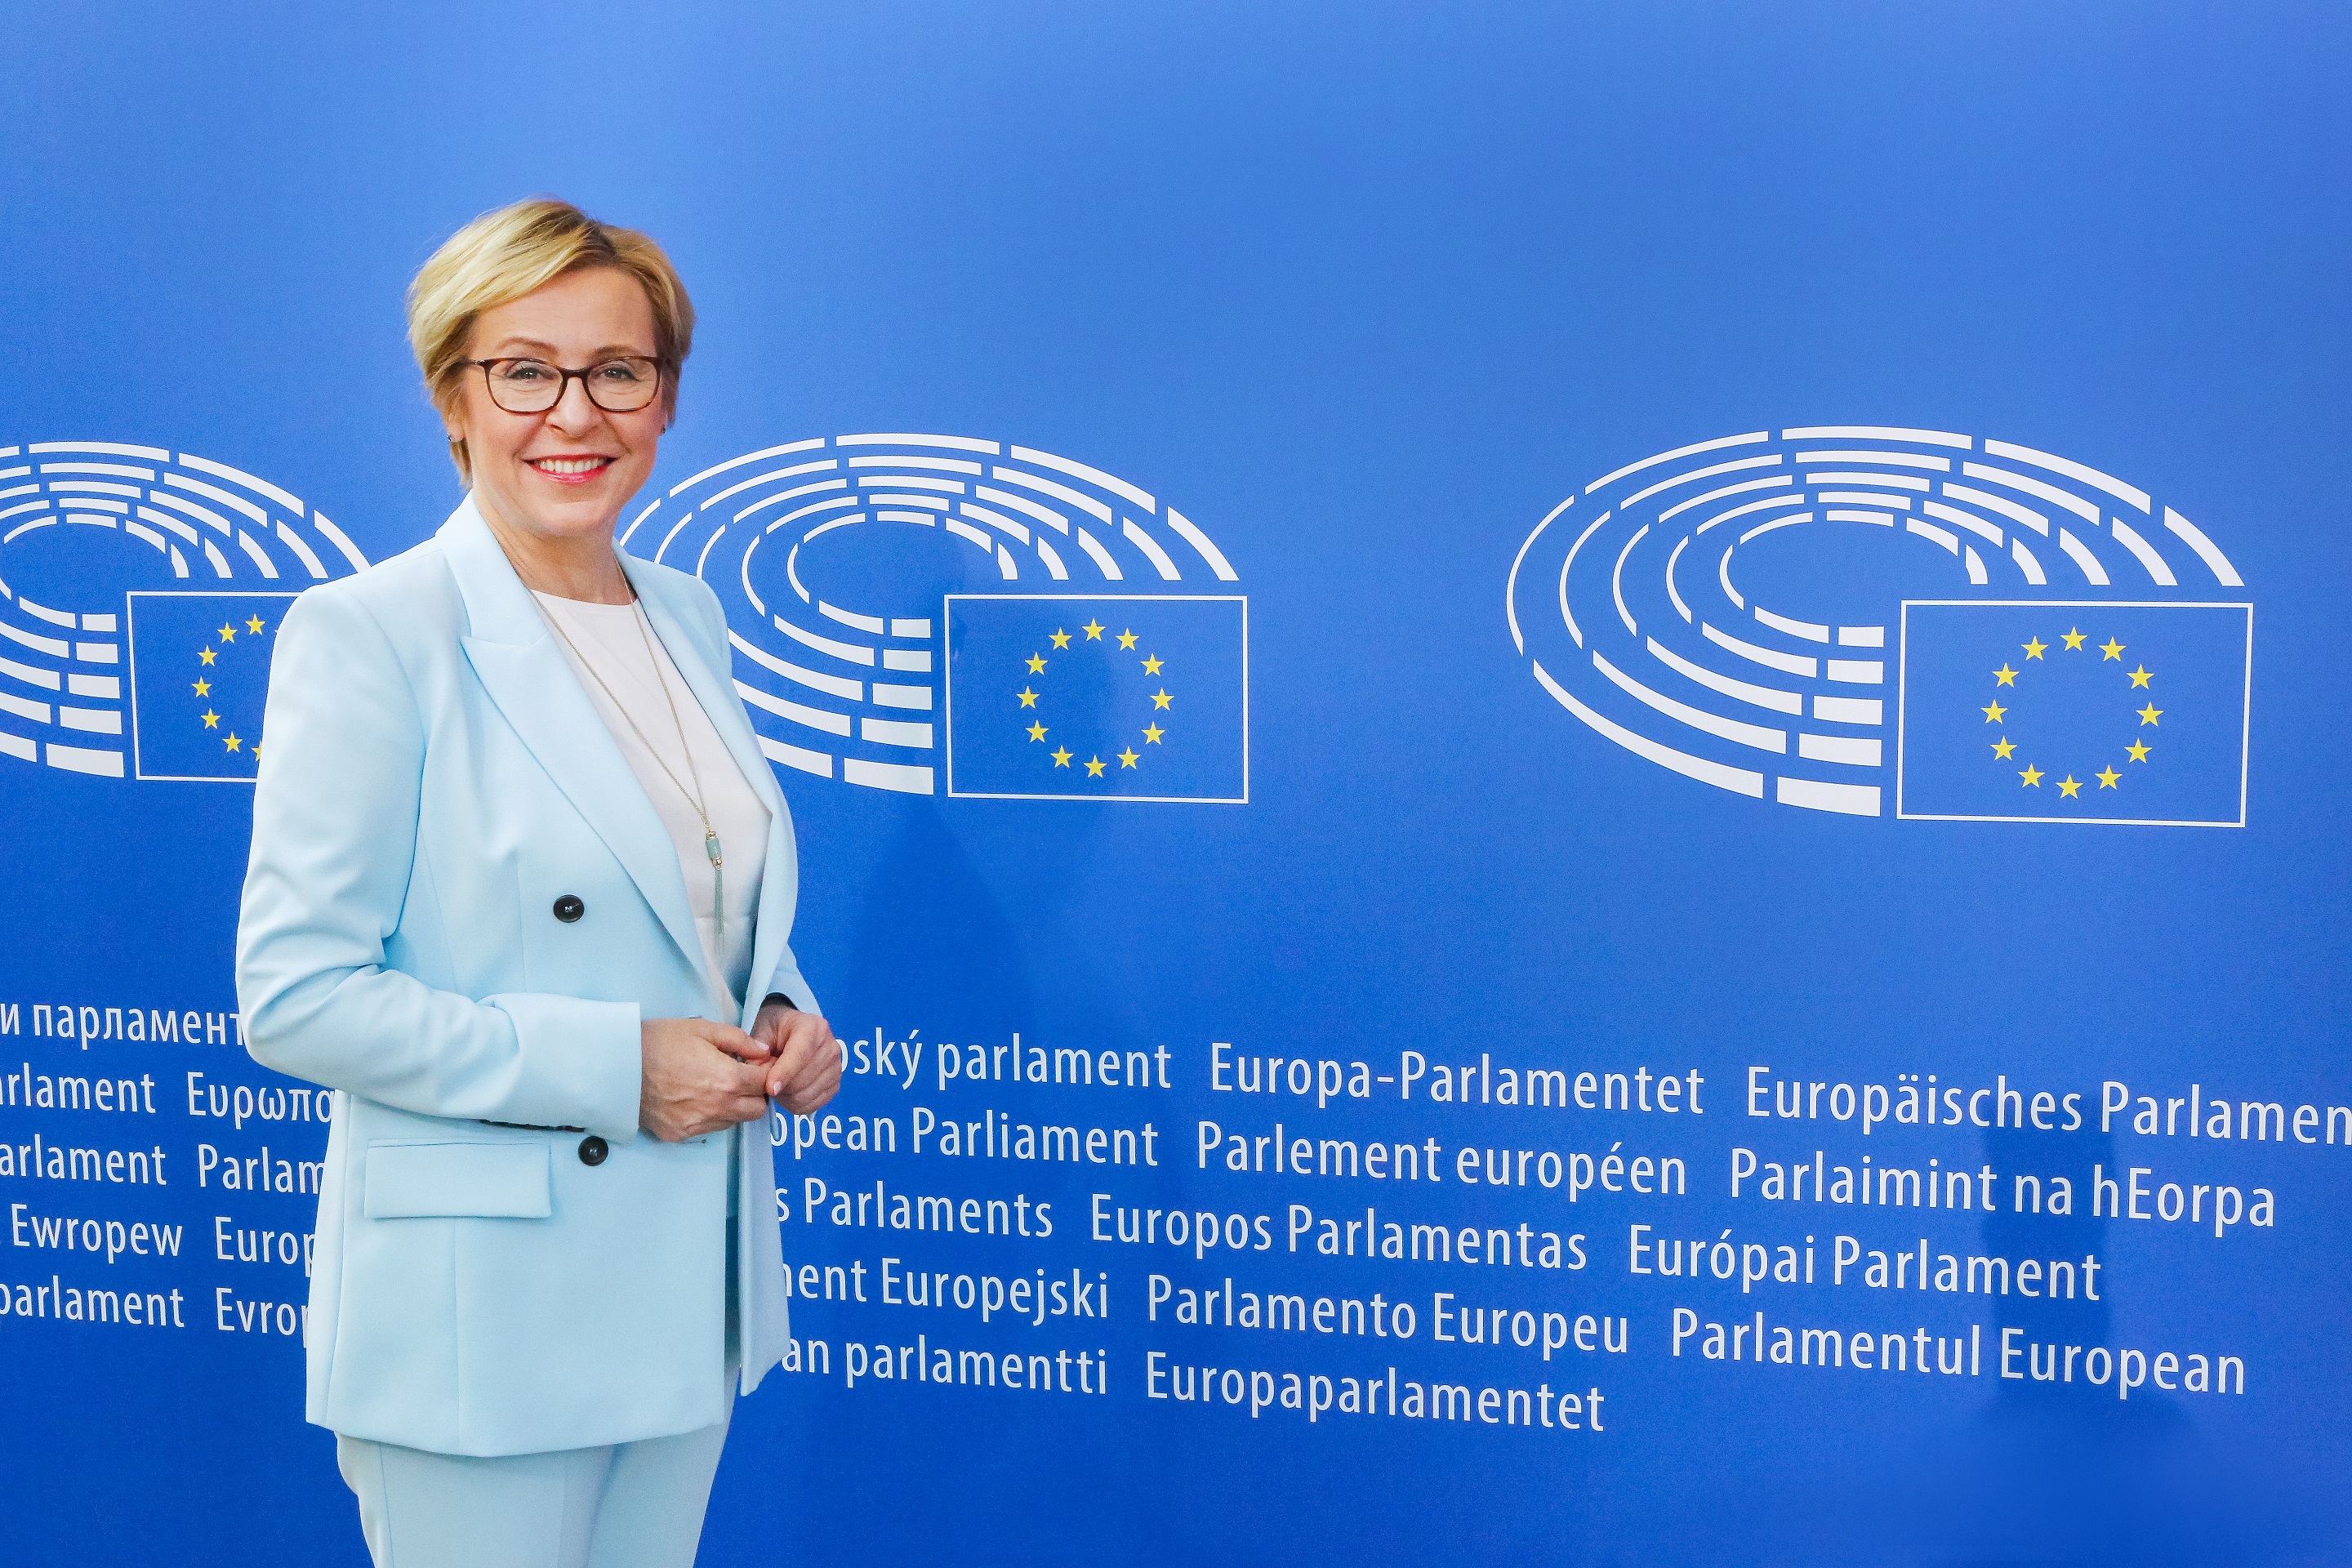 Podziękowania od Pani Jadwigi Wiśniewskiej - Poseł do Parlamentu Europejskiego